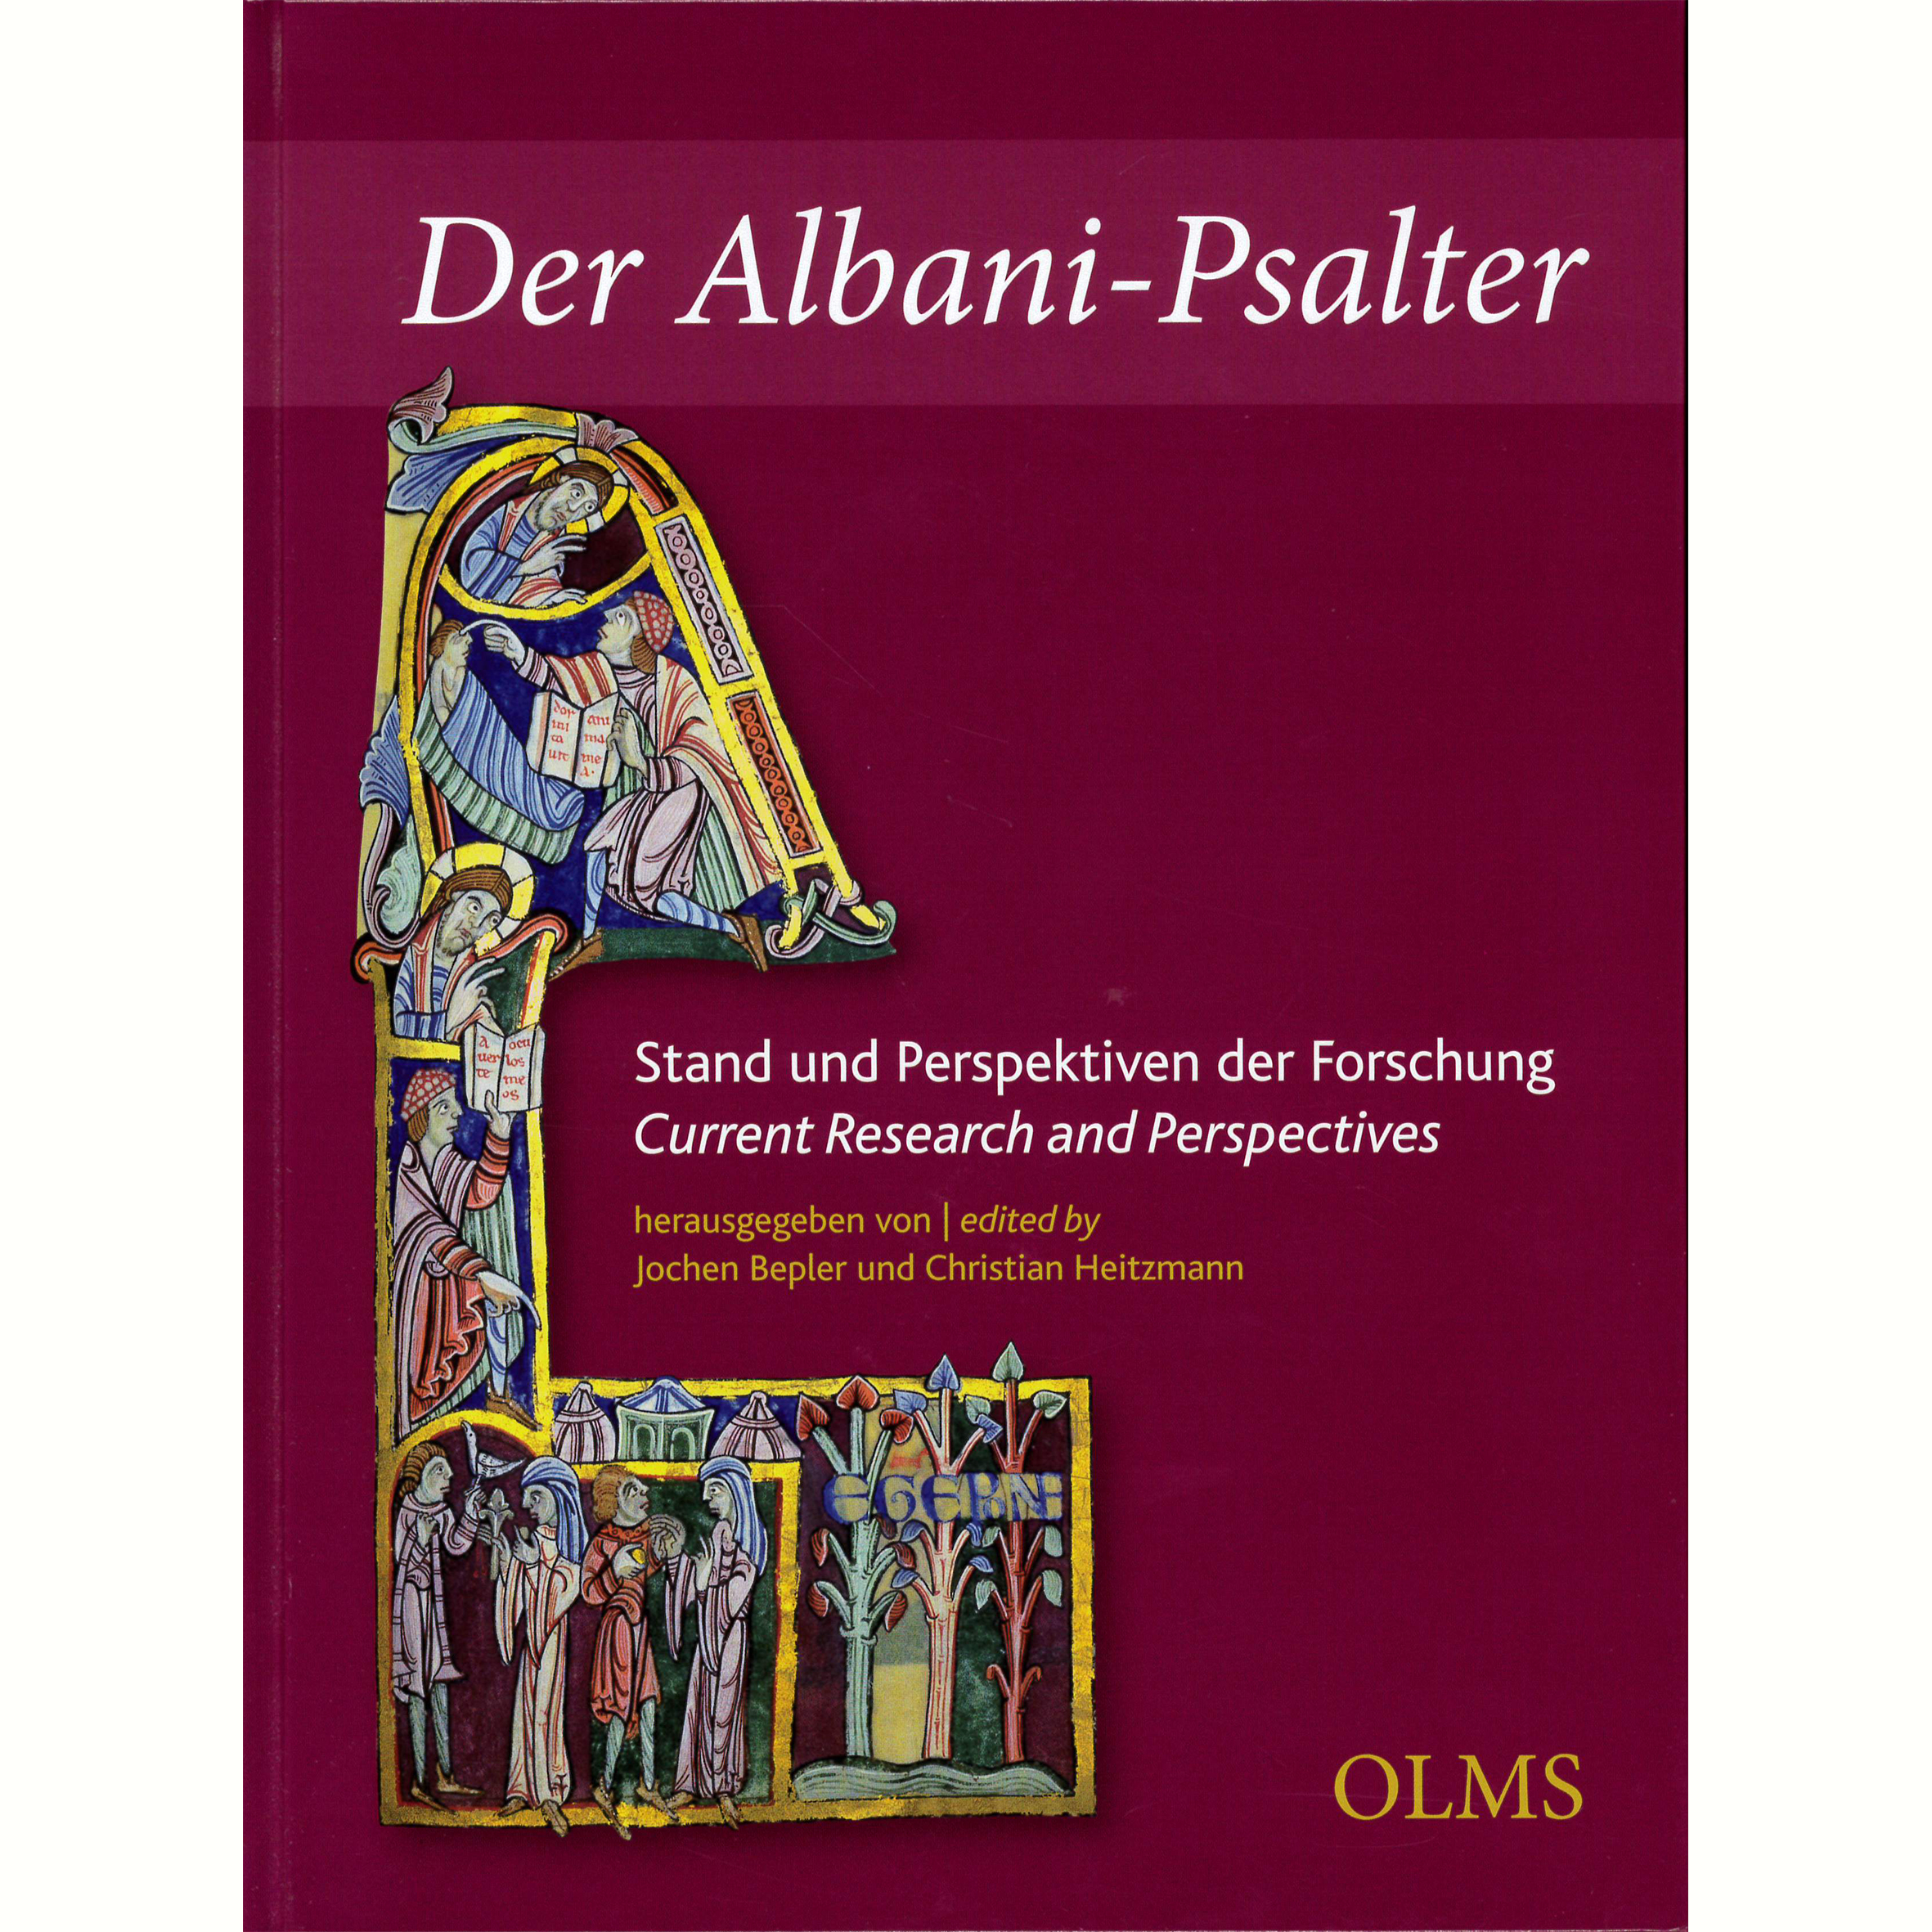 Der Albani-Psalter. Stand und Perspektiven der Forschung